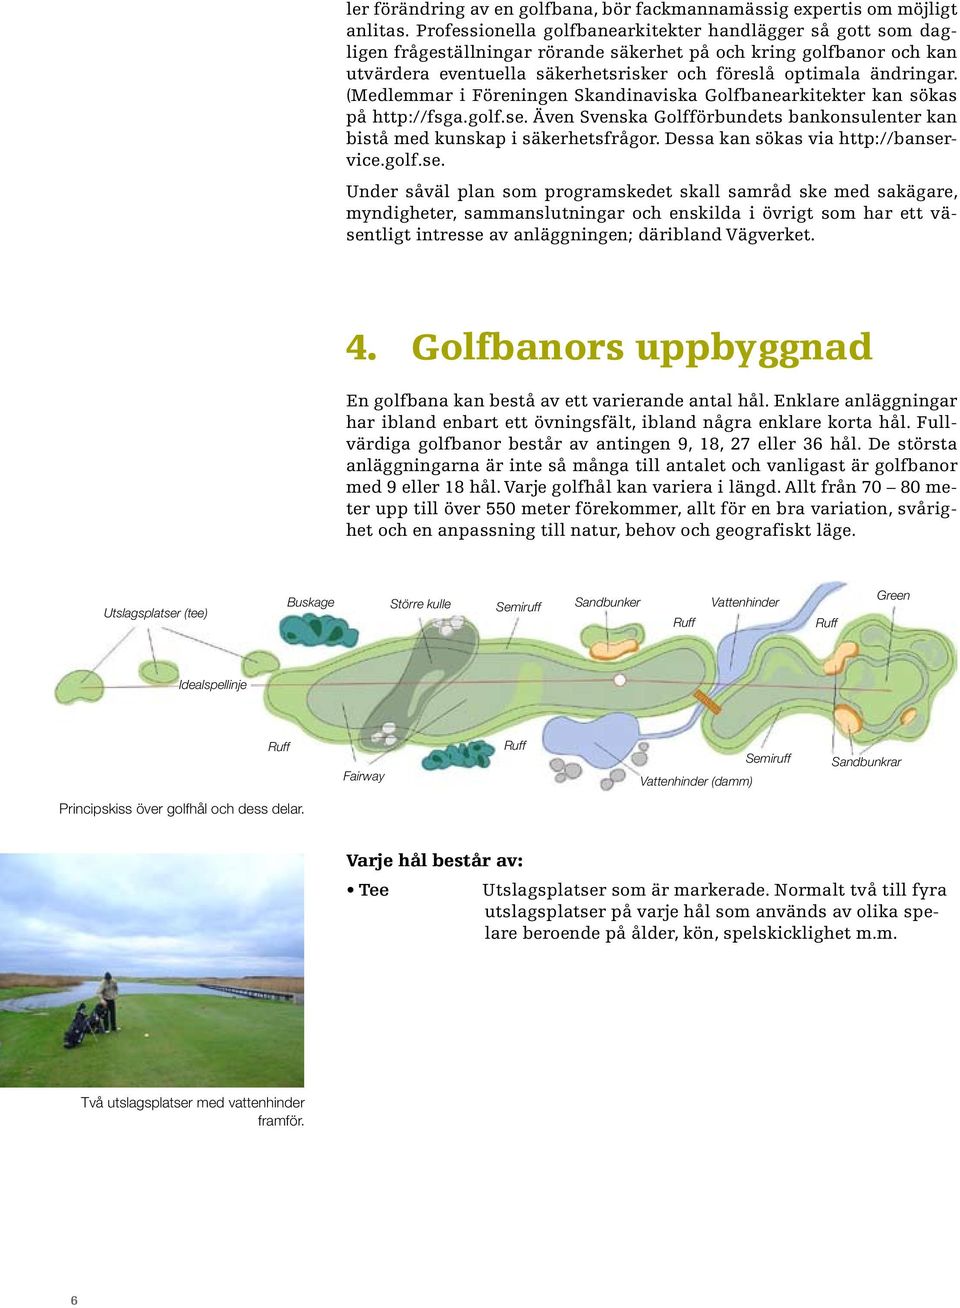 (Medlemmar i Föreningen Skandinaviska Golfbanearkitekter kan sökas på http://fsga.golf.se. Även Svenska Golfförbundets bankonsulenter kan bistå med kunskap i säkerhetsfrågor.